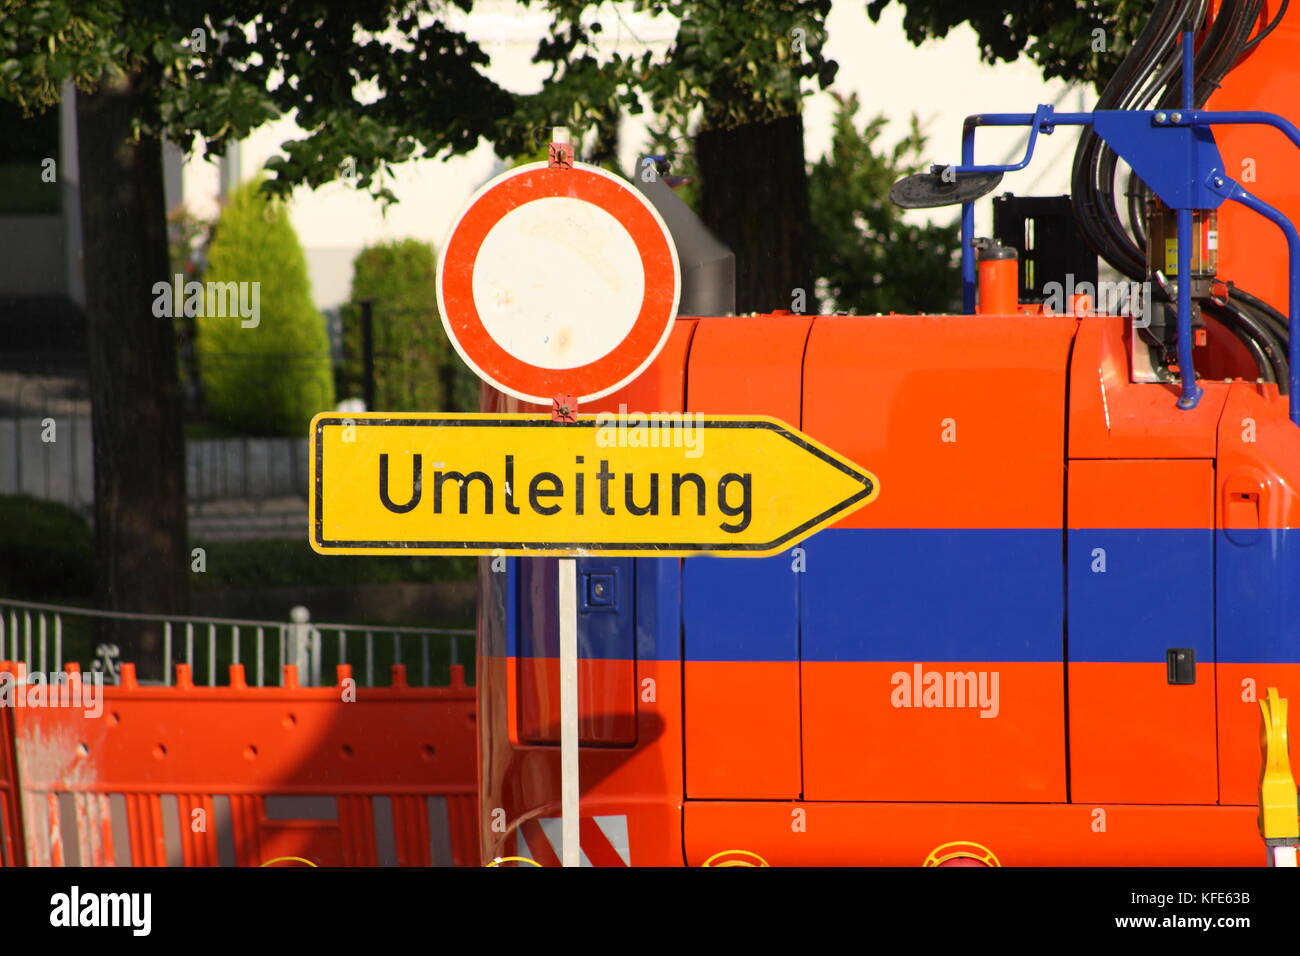 Verkehrsschild, gelbes Schild mit Umleitung, rundes Schild mit Durchfahrt verboten, Verbot für Fahrzeuge aller Art Foto Stock